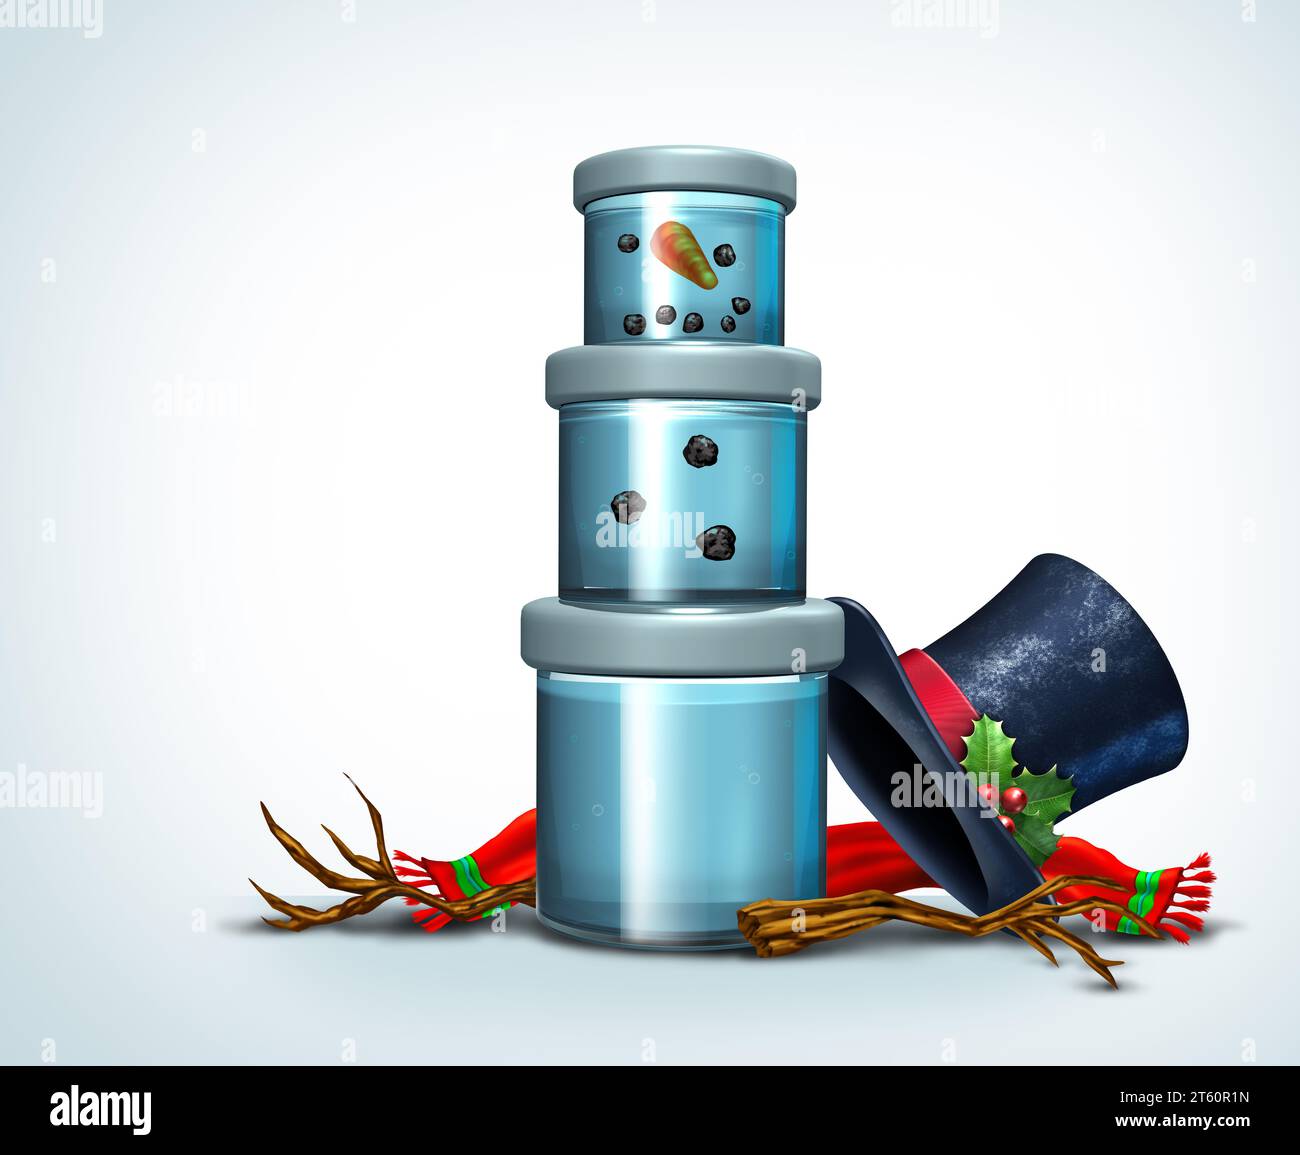 Lustiges Schneemann-Konzept als Schneemann schmolz und in einem Container als lustiger festlicher, warmer Winterschneit-Weihnachtshumor für einen Jahreszeitgruß gelagert Stockfoto